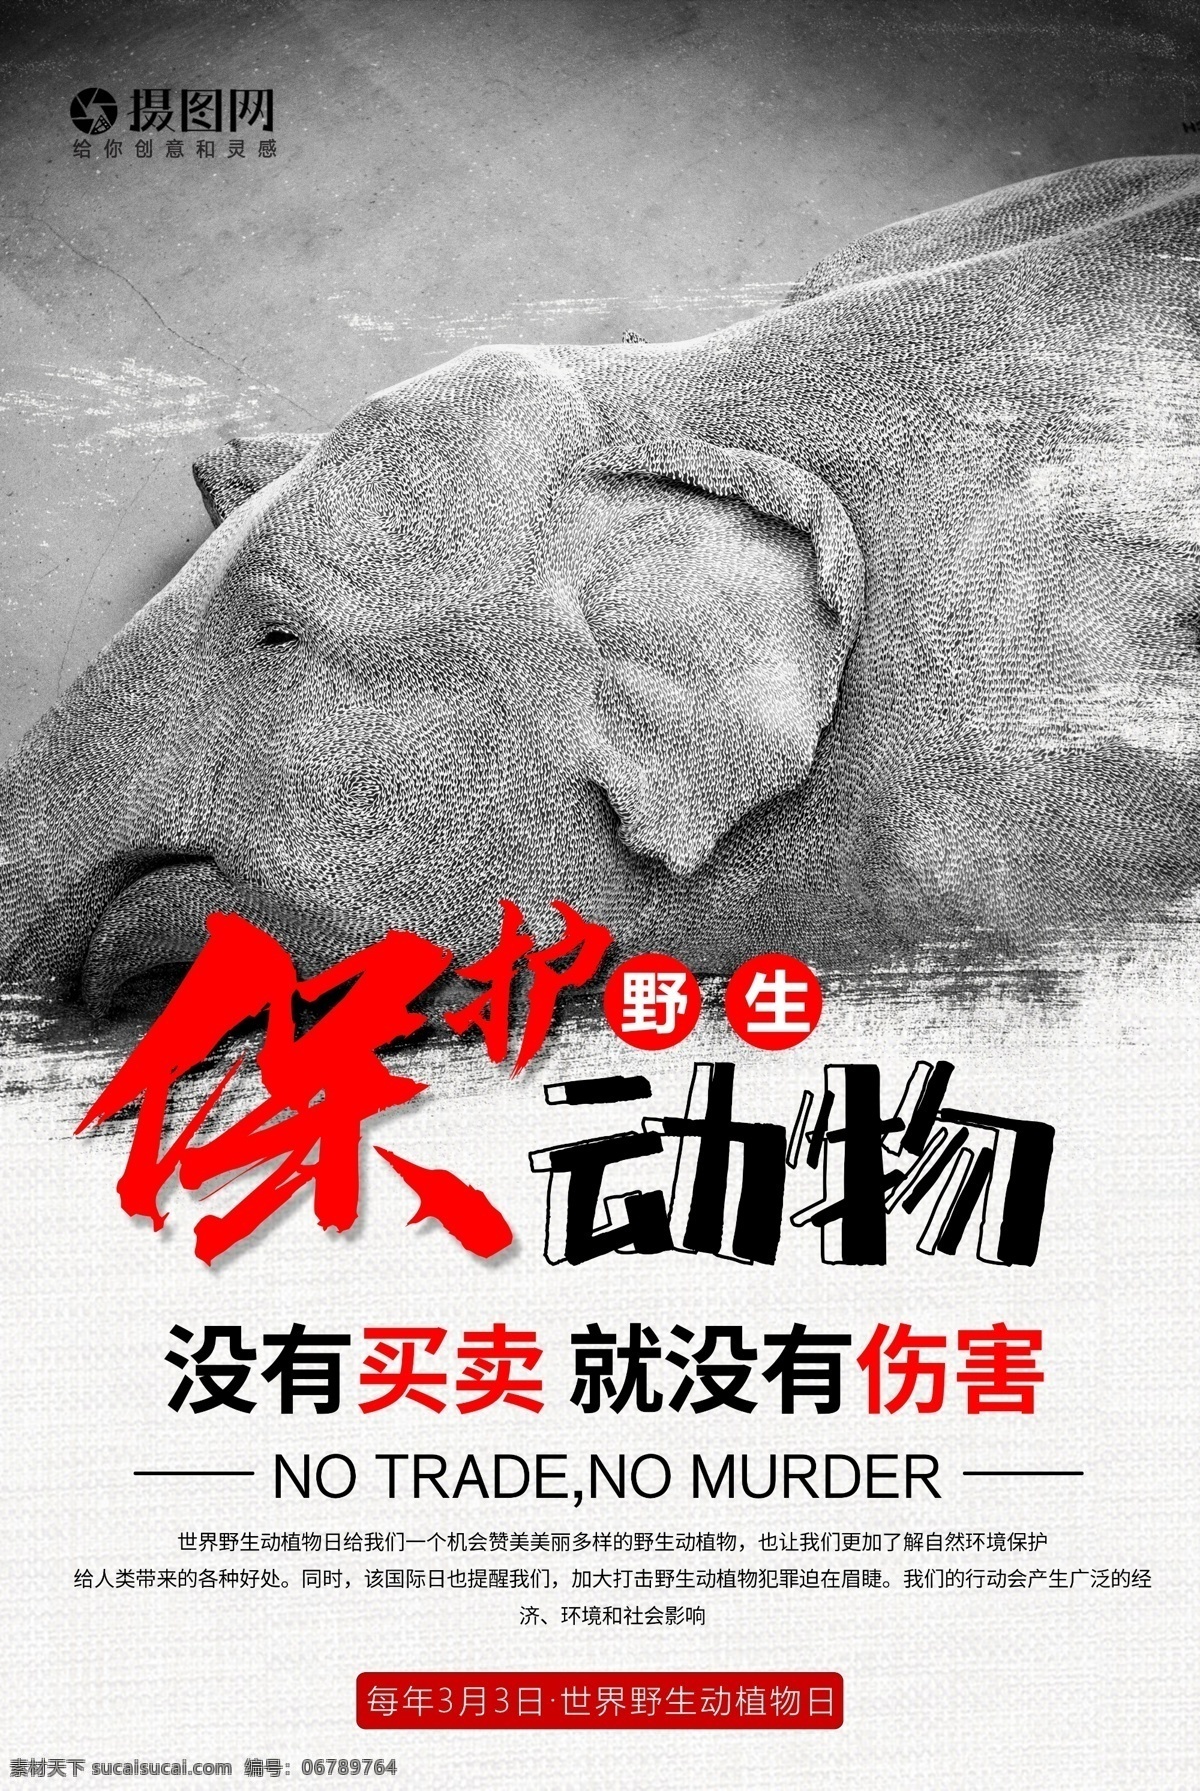 世界 野生 动植物 日 海报 保护野生动物 保护动物 植物 地球 建设美好家园 动物 保护动植物 公益 宣传 3月3日